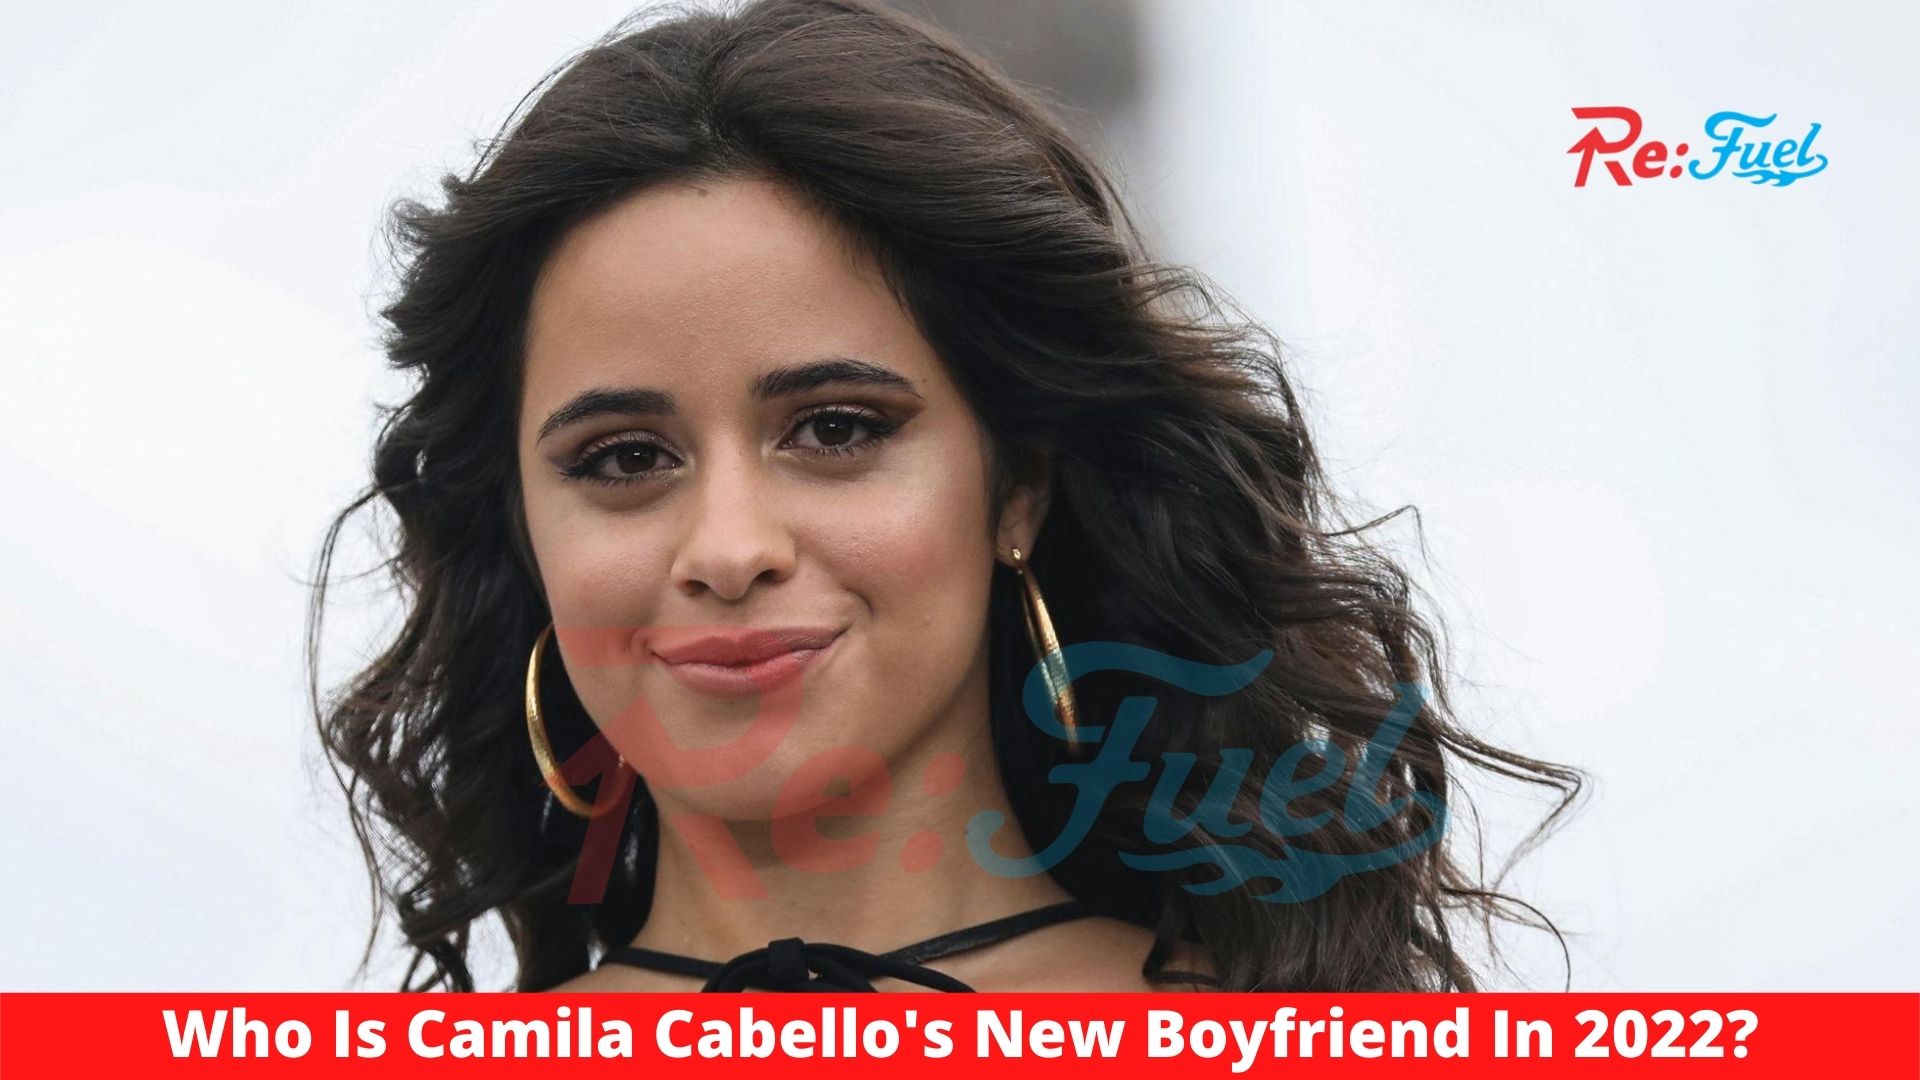 Who Is Camila Cabello's New Boyfriend In 2022?